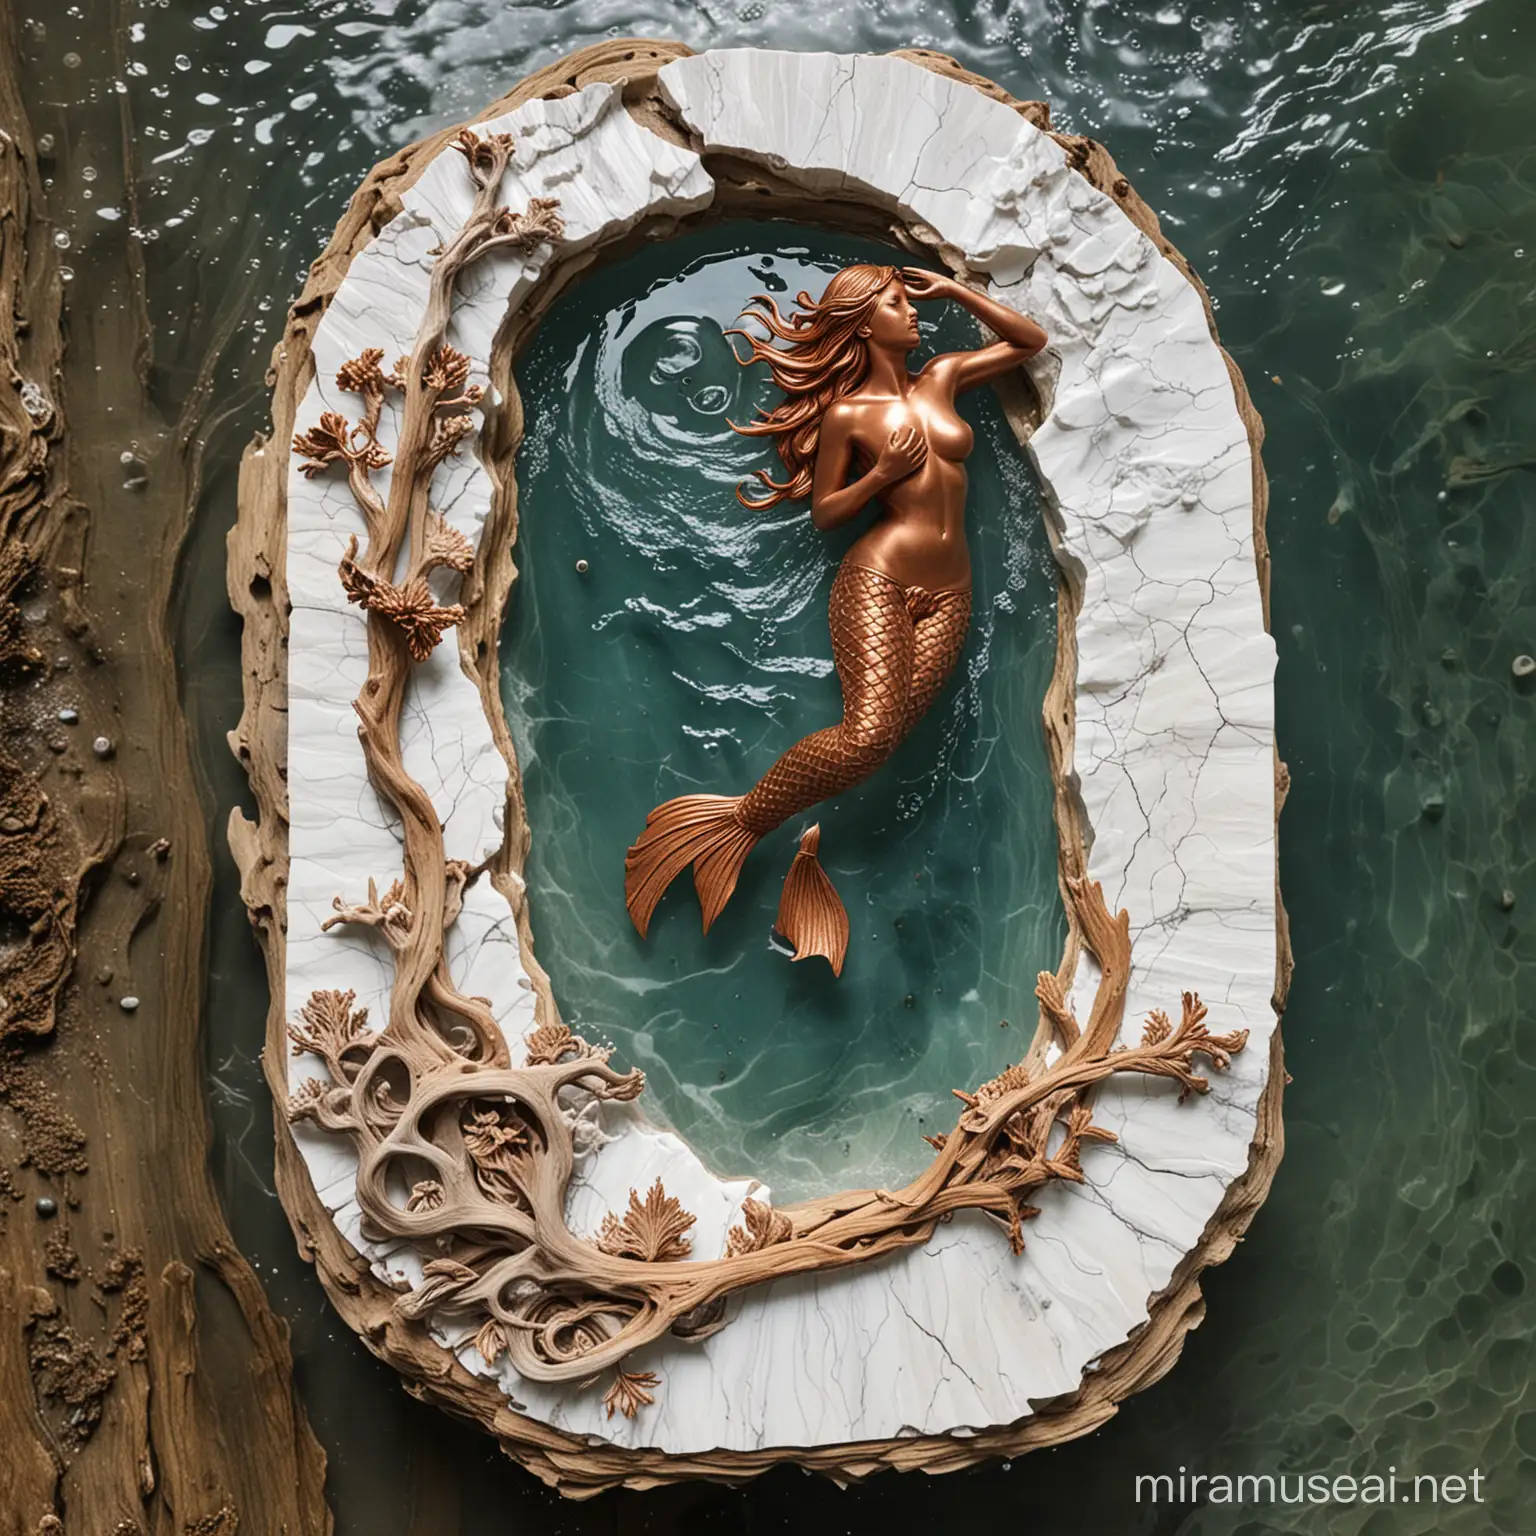 Underwater Mermaid Sculpture on White Marble Slab